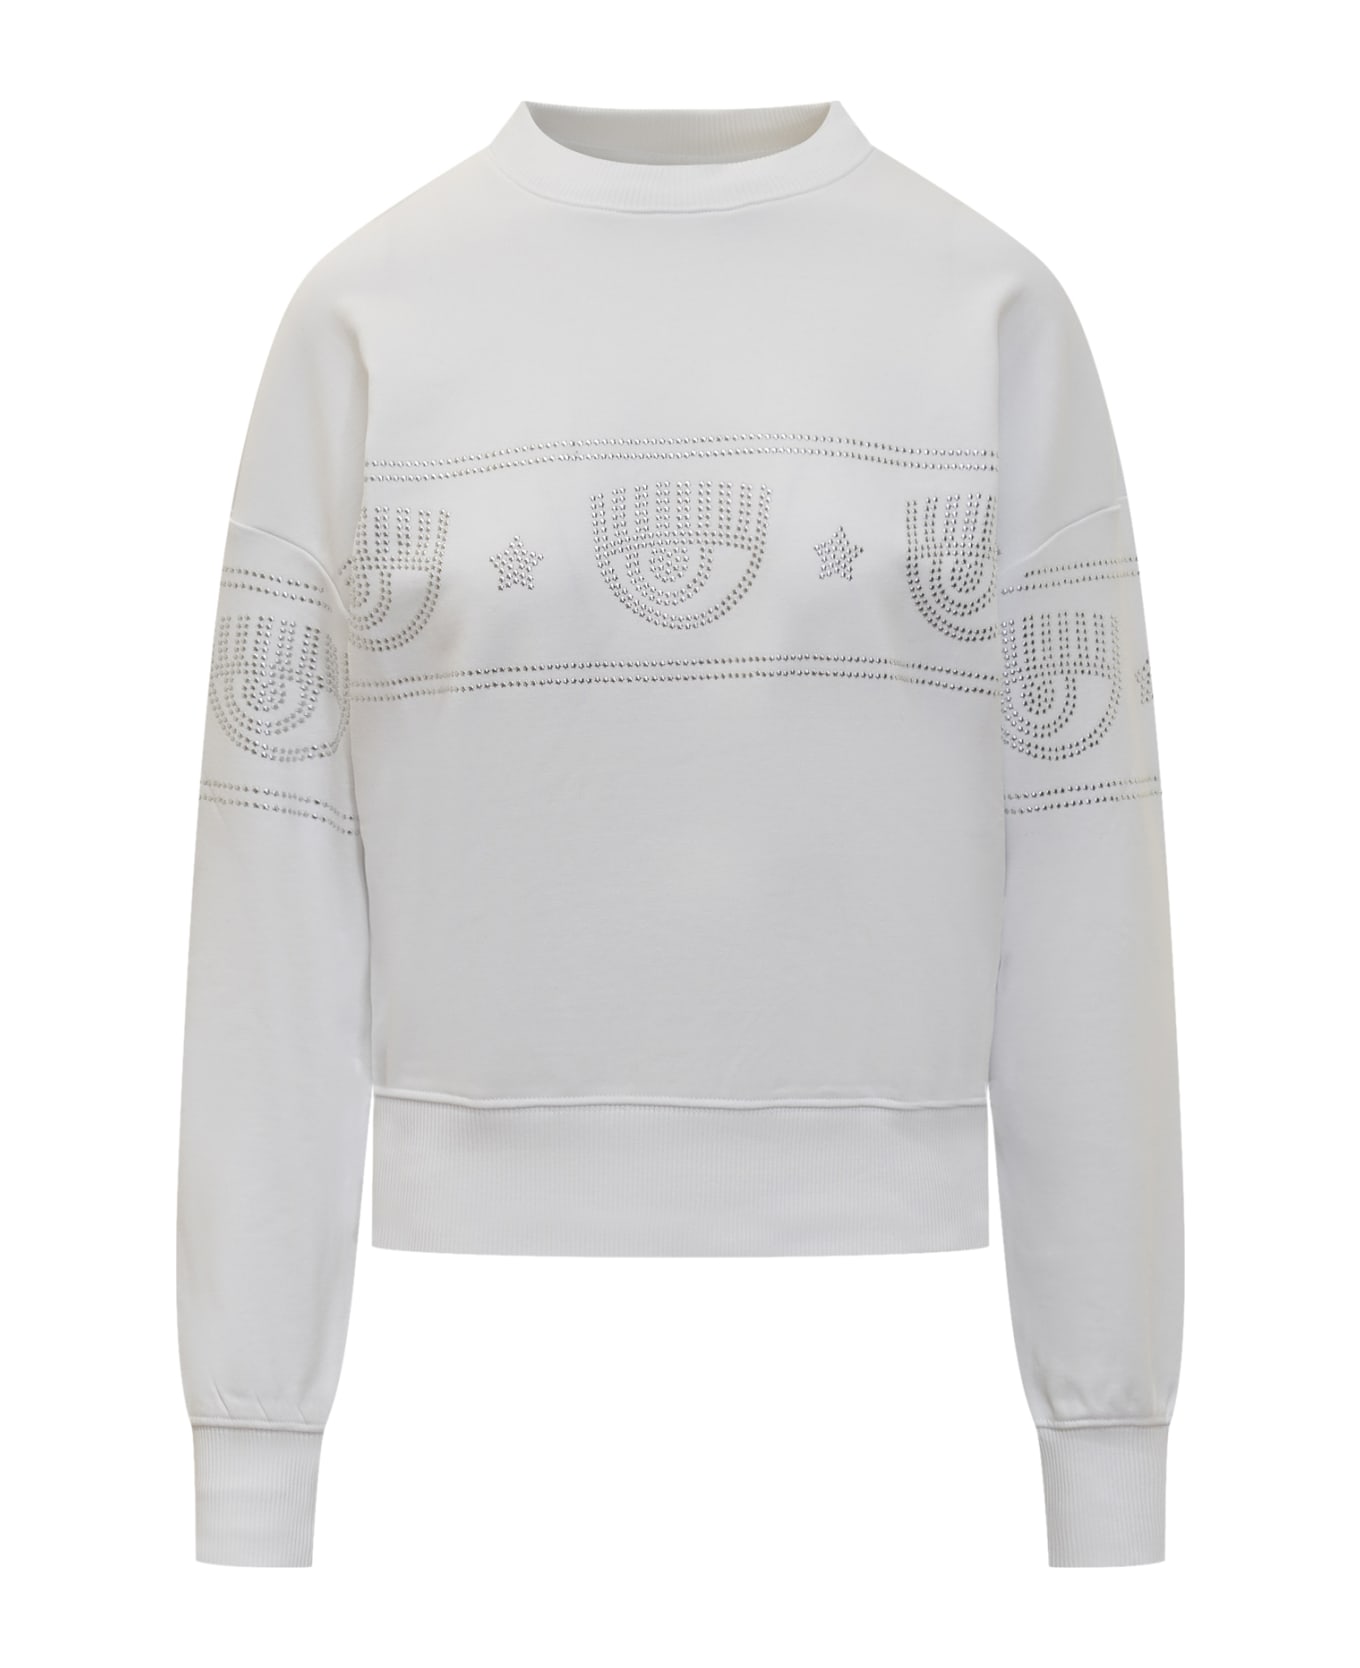 Chiara Ferragni Logomania 317 Sweatshirt - WHITE